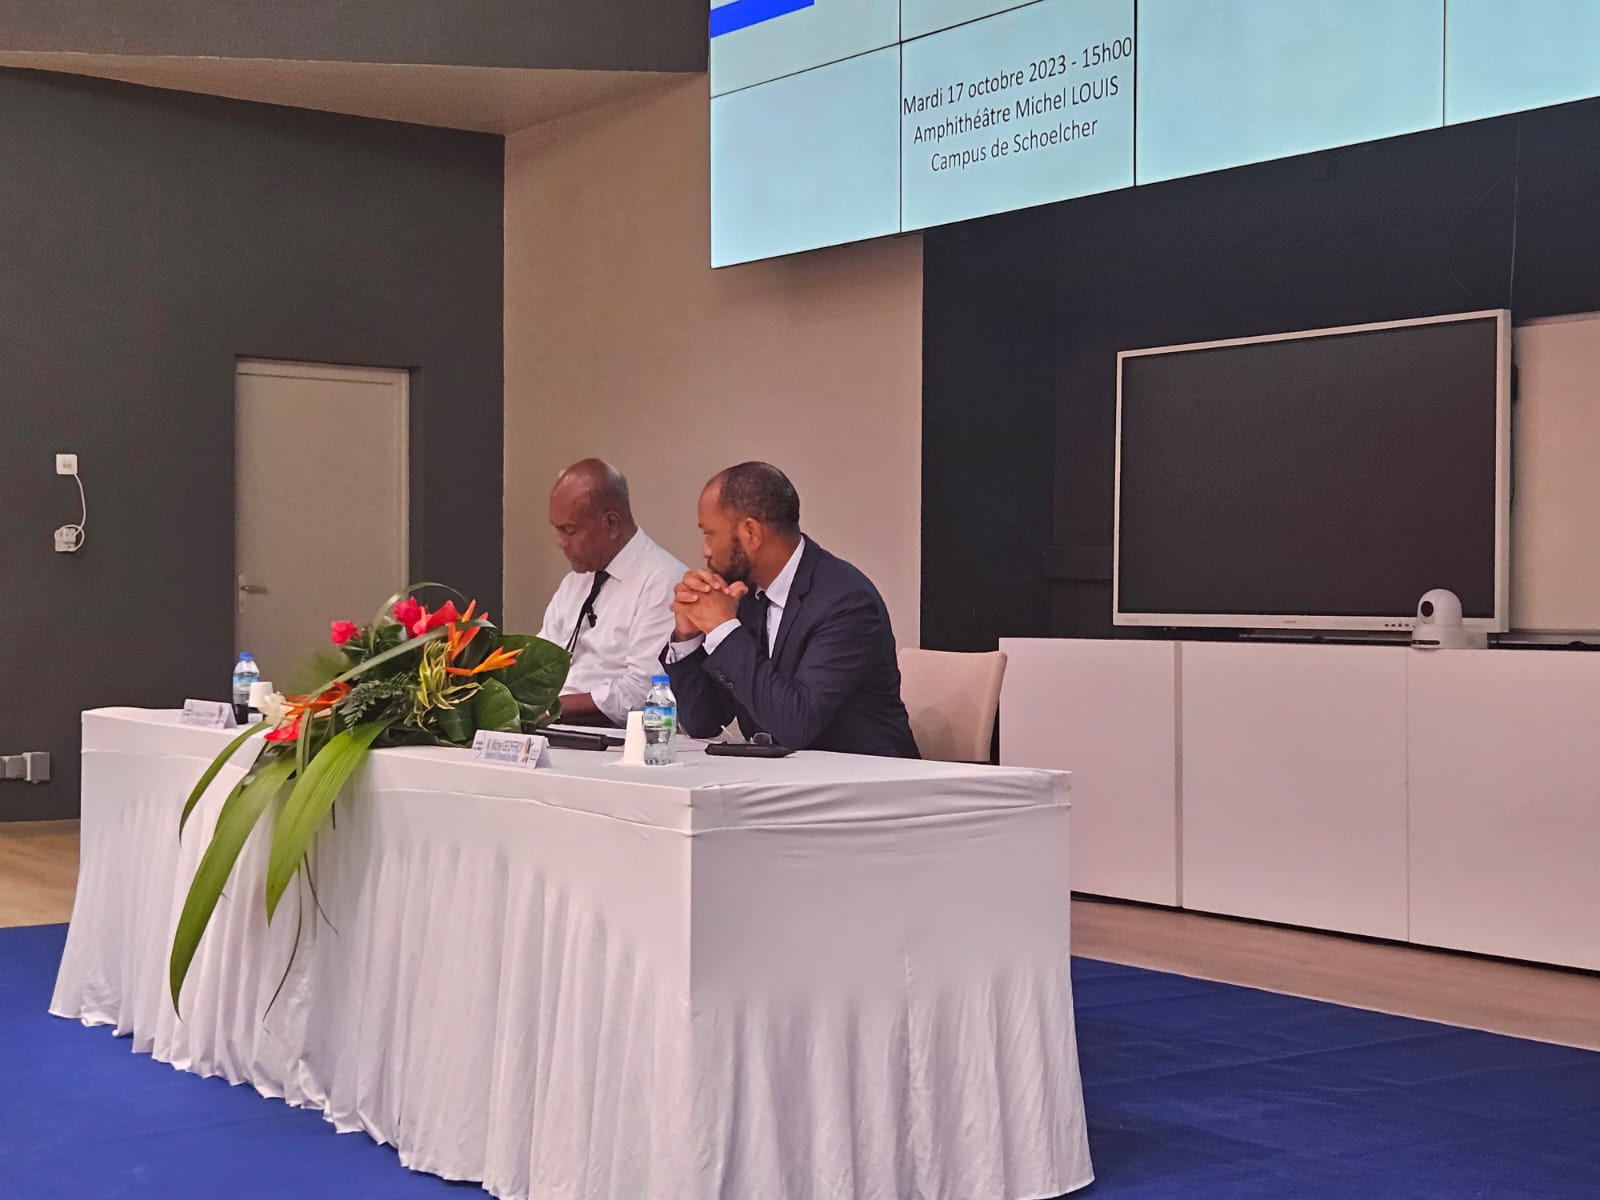     La Collectivité territoriale de Martinique signe une convention avec l’Université des Antilles

